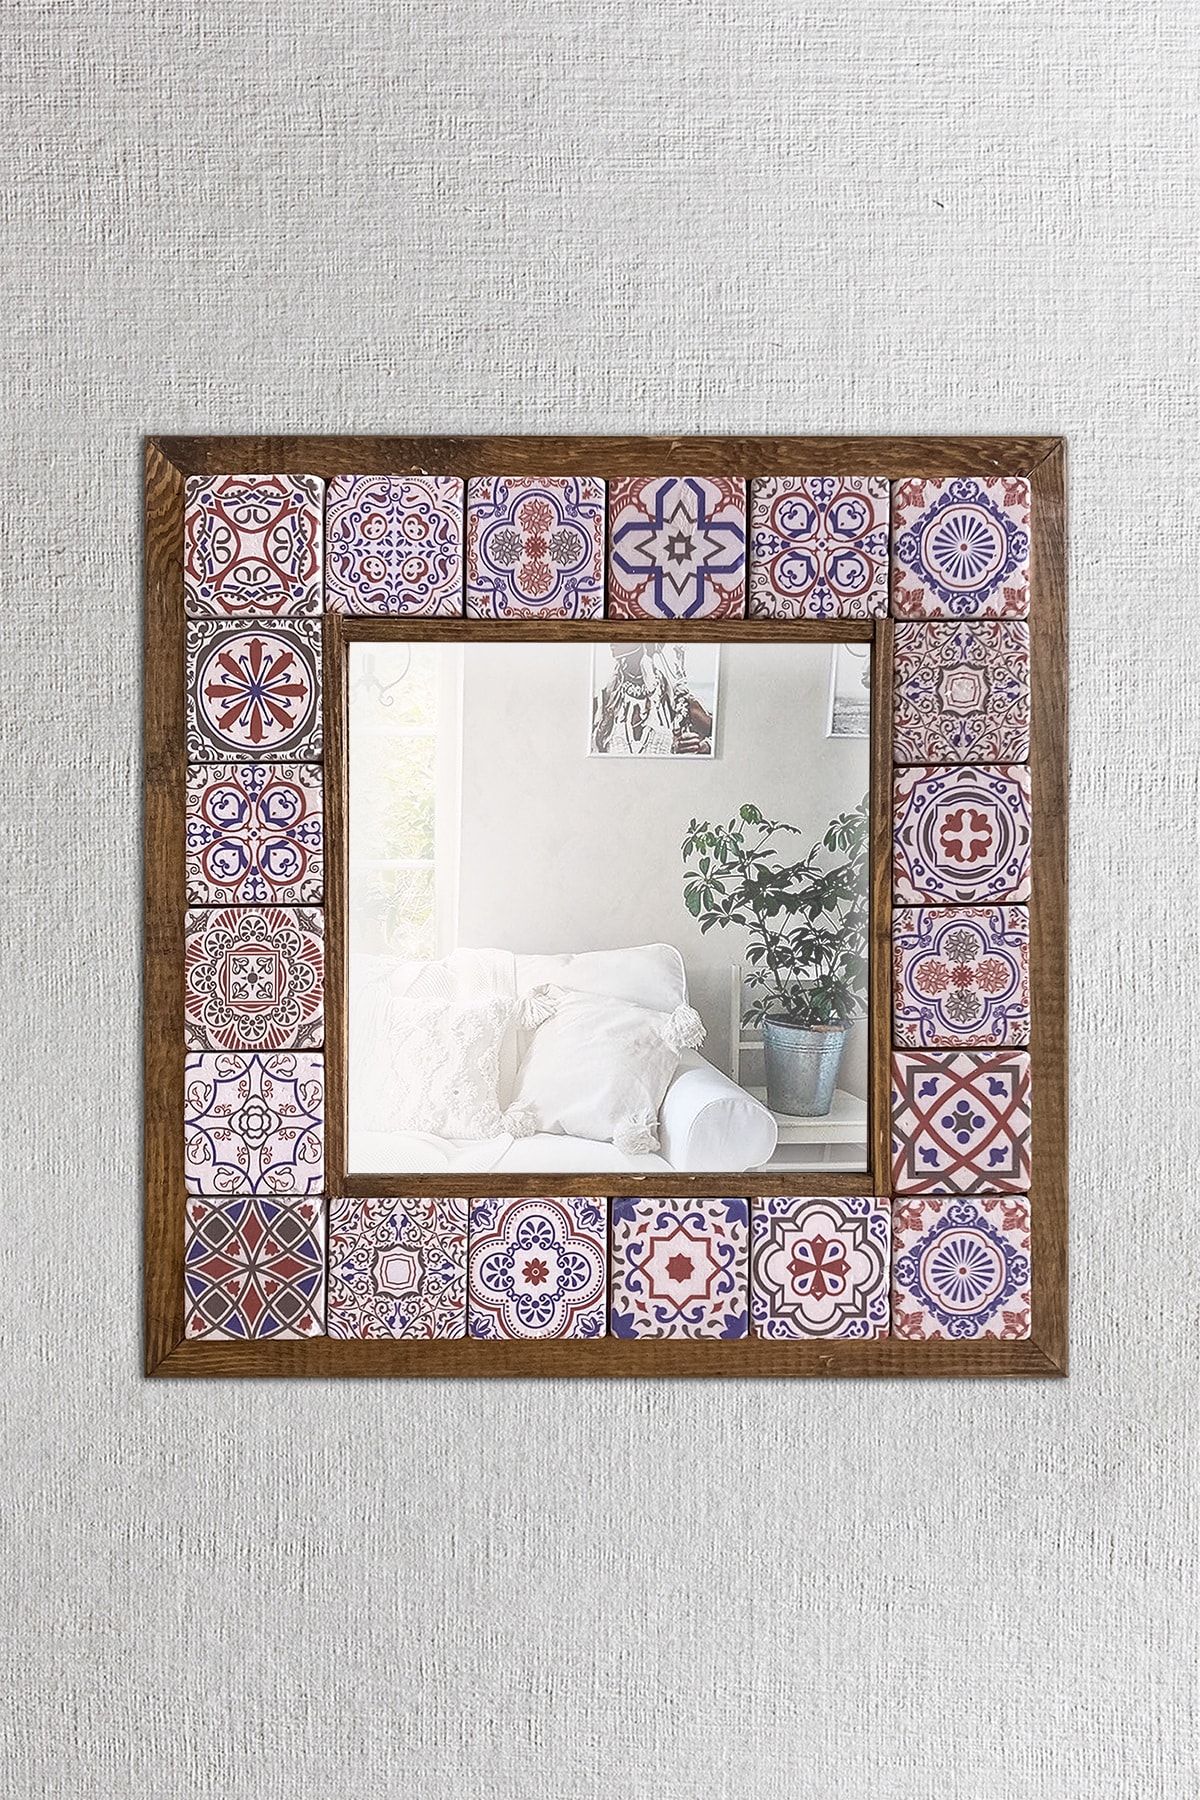 Pinecone Mozaik Taş Duvar Aynası, Ahşap Çerçeveli Dekoratif Ayna, Salon Konsol Aynası, Wall Mirror 33x33cm